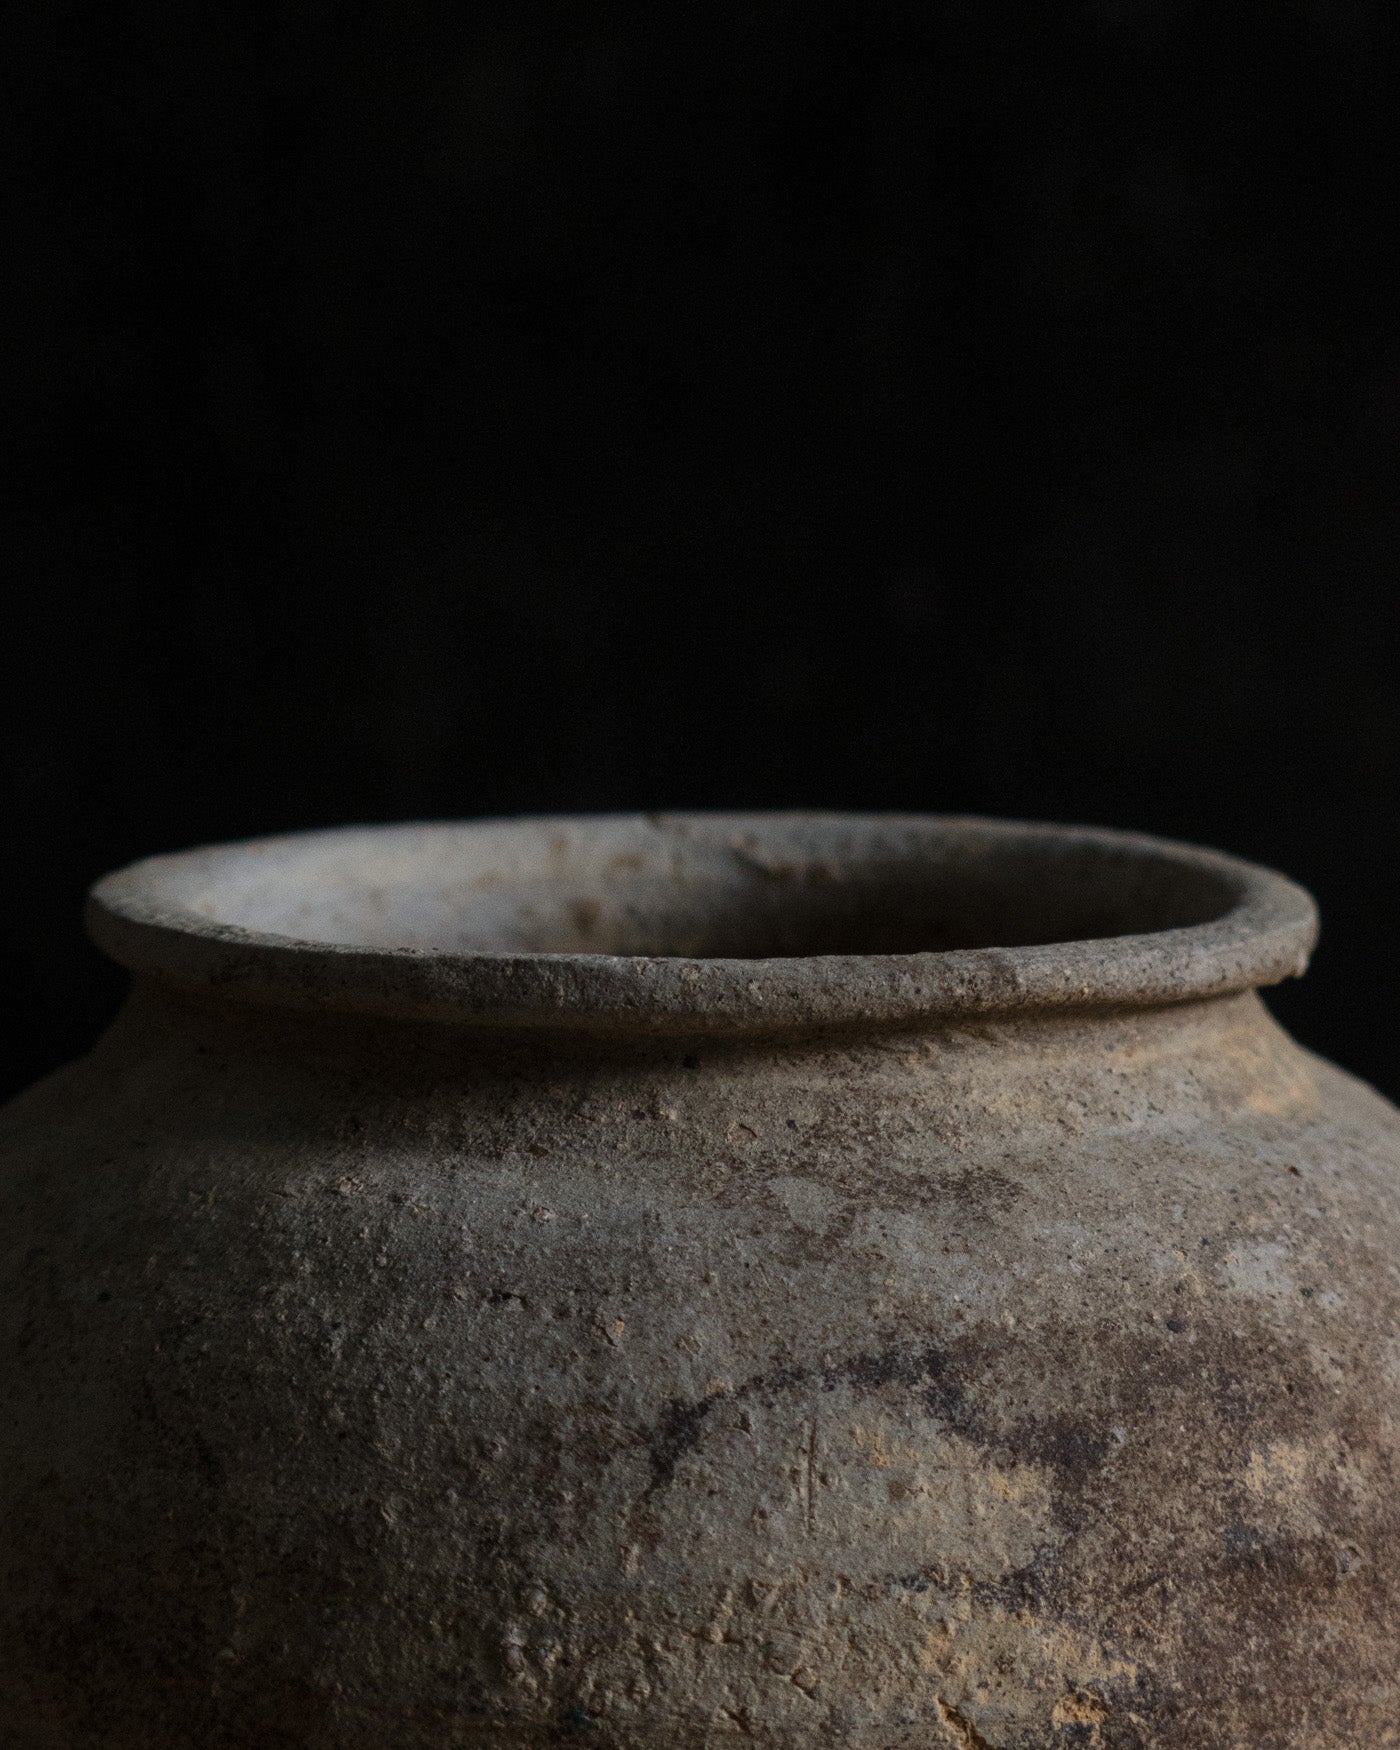 白練折沿陶罐 Shironeri Pottery Jar